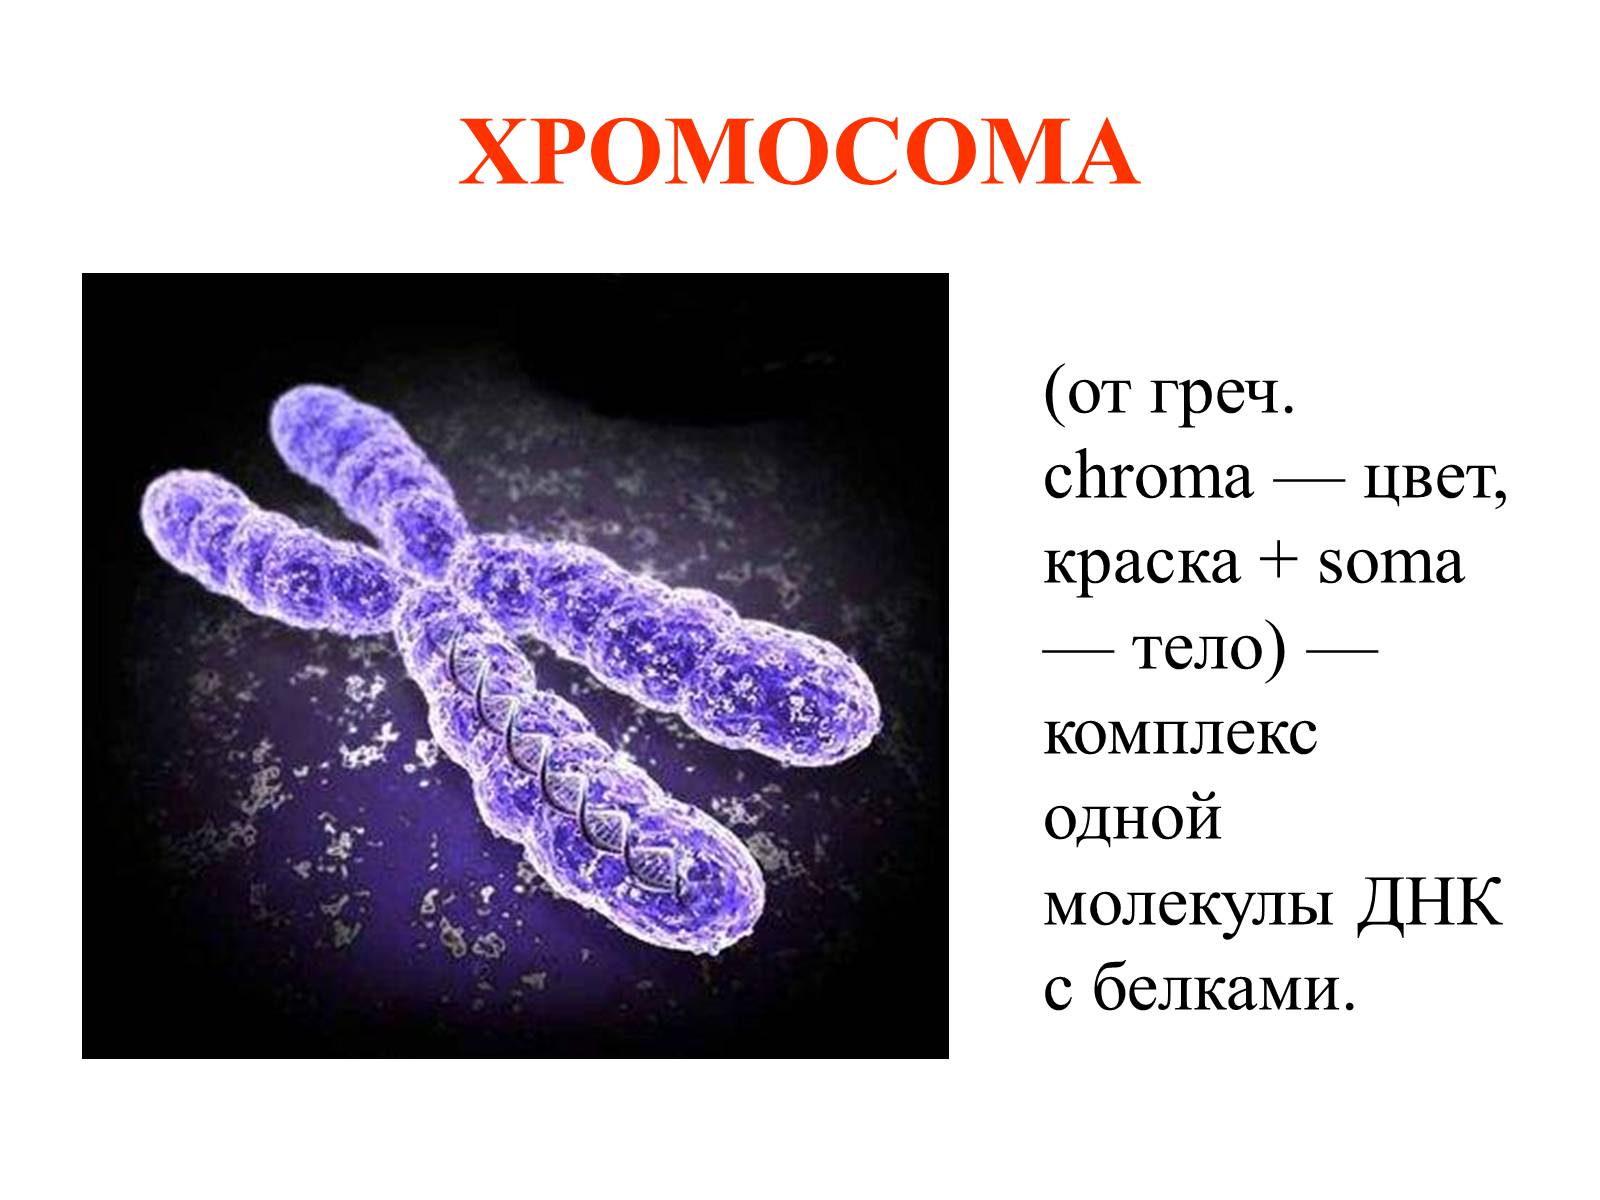 Хромосома состоит из